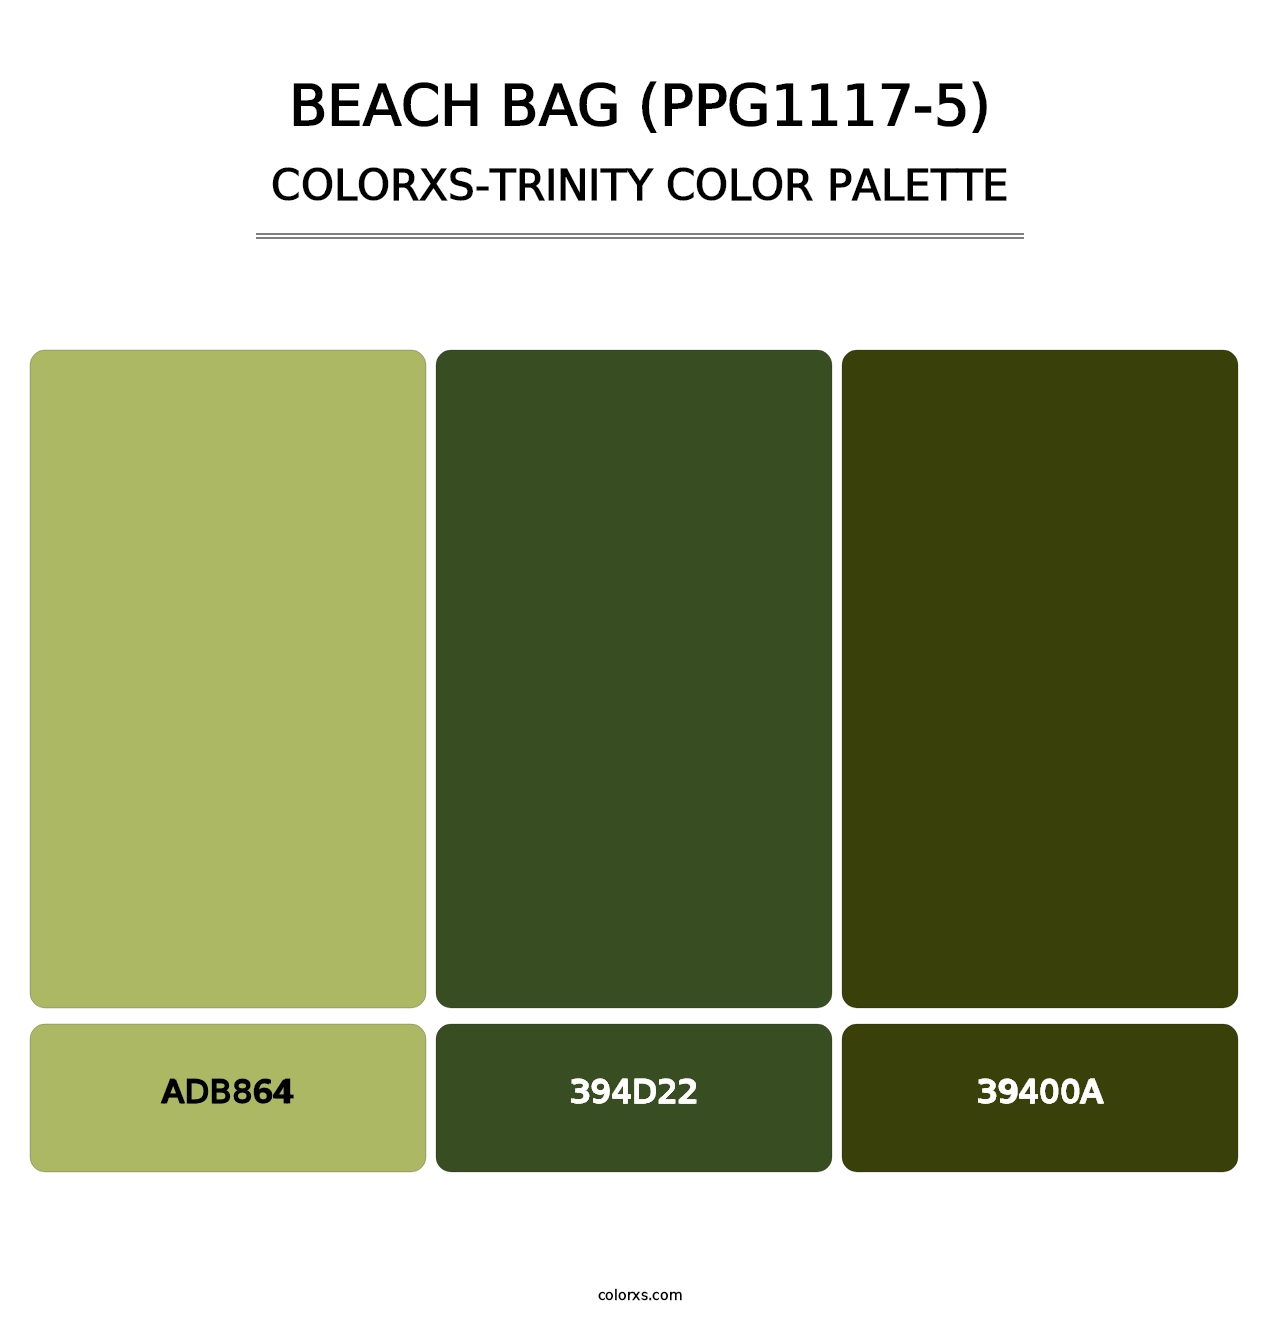 Beach Bag (PPG1117-5) - Colorxs Trinity Palette